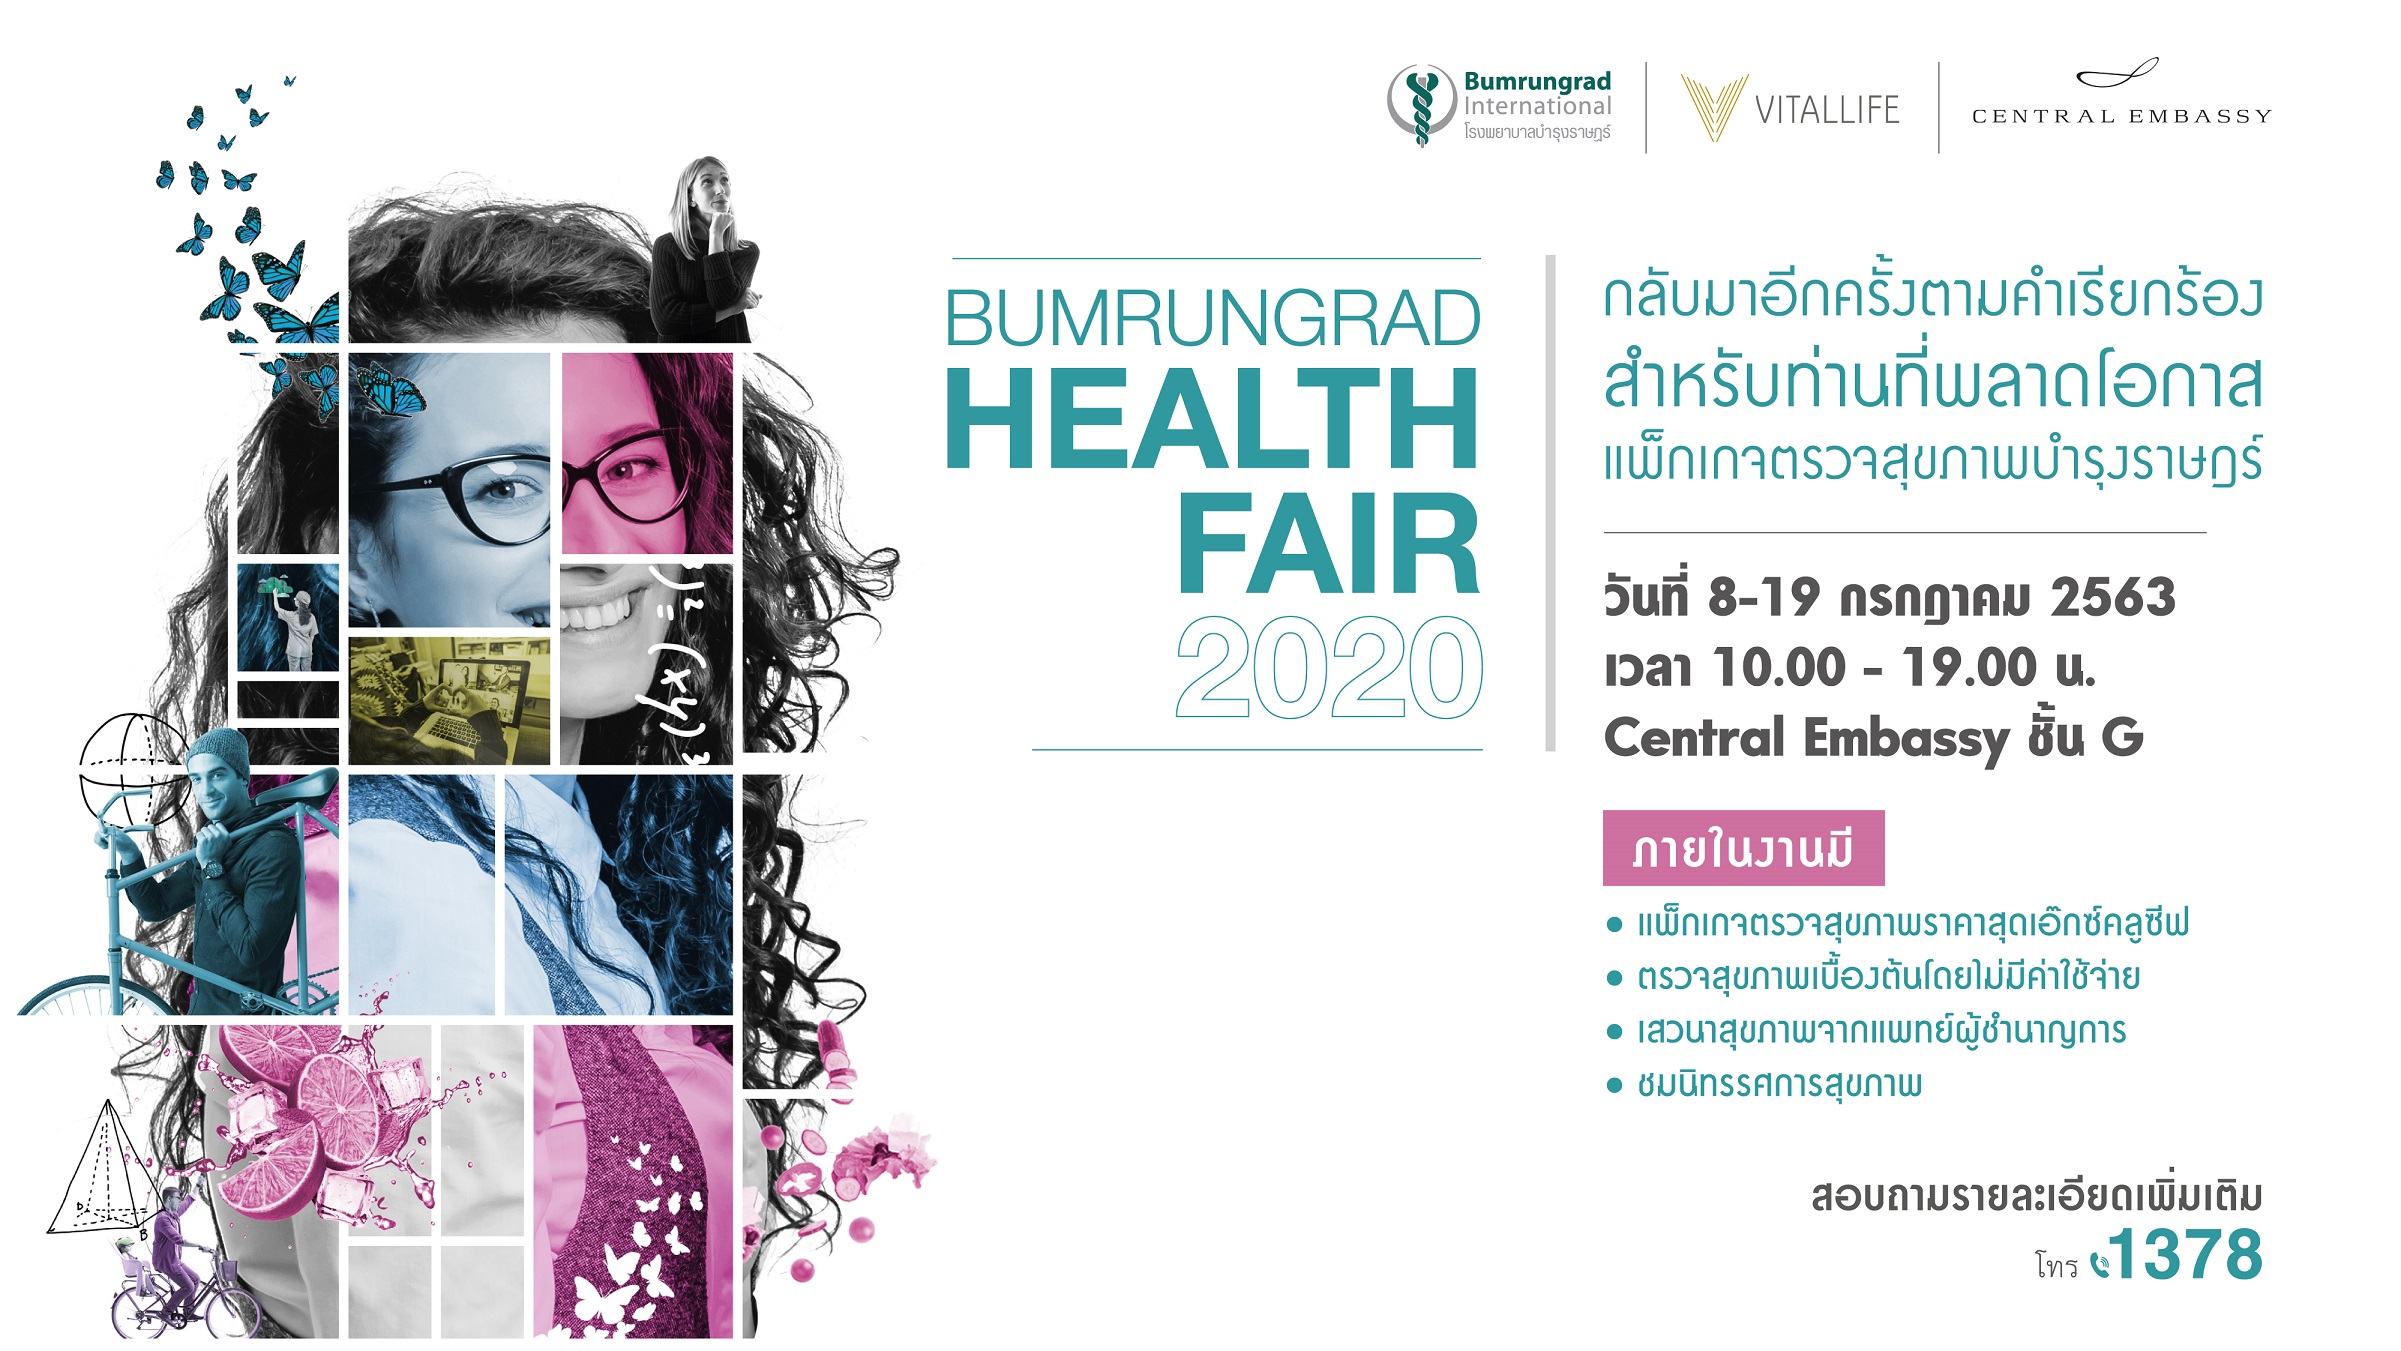 8 19 กรกฎาคมนี้ บำรุงราษฎร์จัดมหกรรมสุขภาพ Bumrungrad Health Fair 2020 เอาใจคนรักสุขภาพยุค new normal โดยไม่มีค่าใช้จ่าย